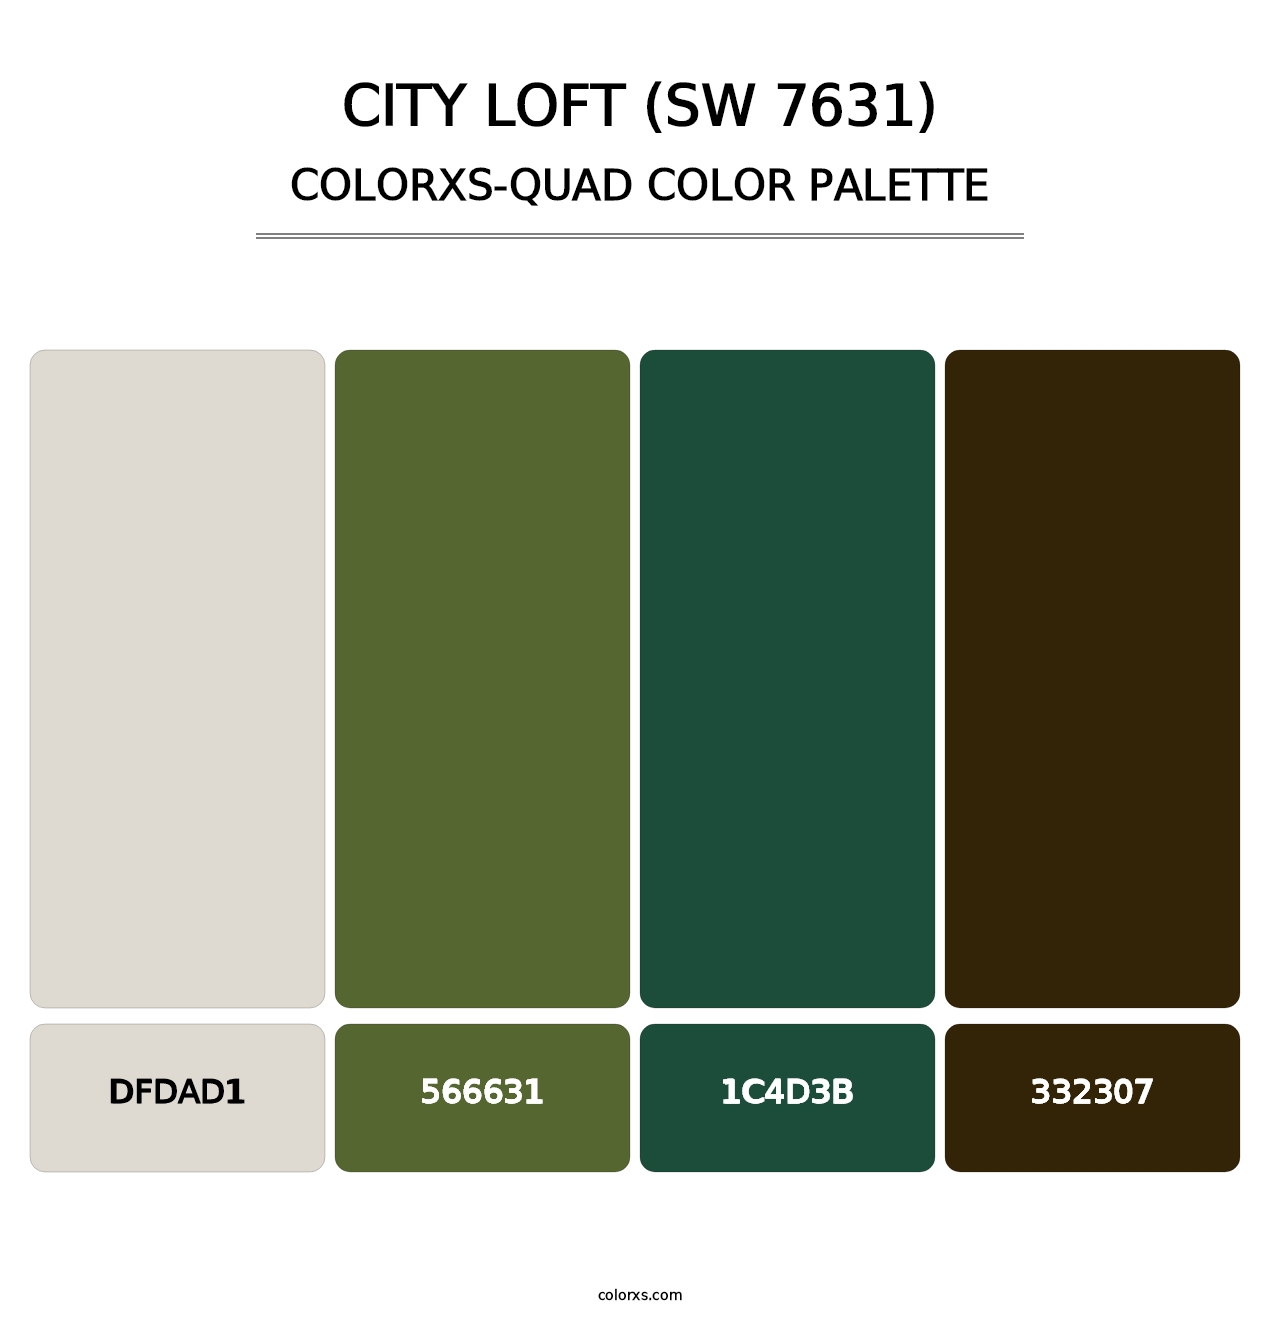 City Loft (SW 7631) - Colorxs Quad Palette